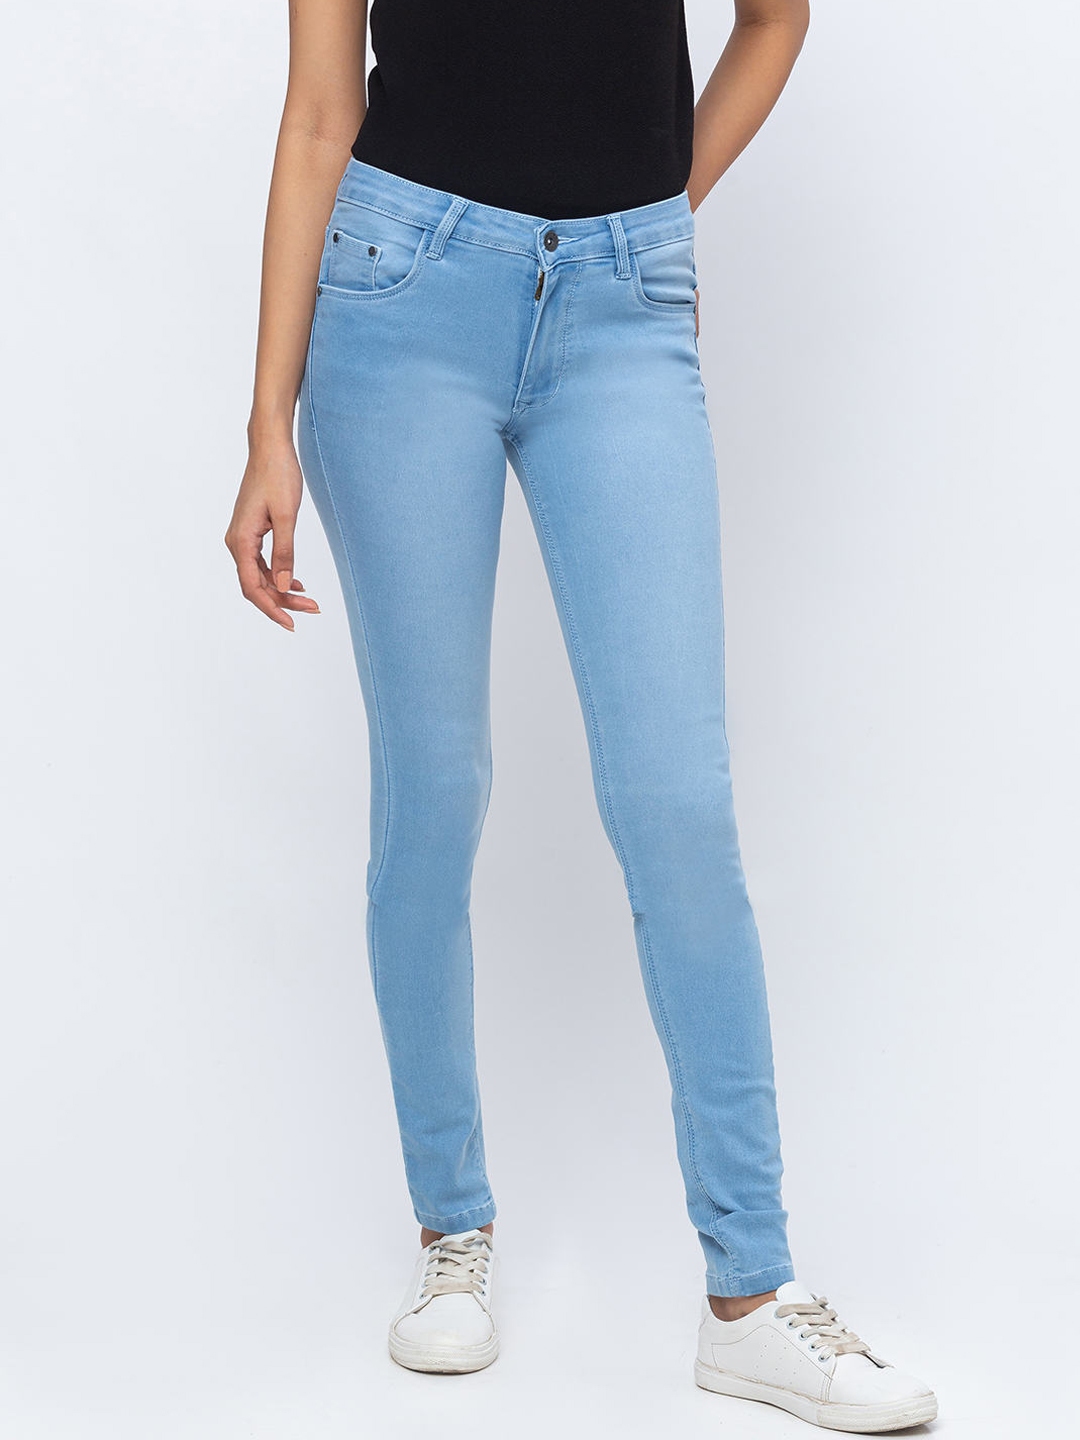 Buy ZOLA Women Blue Slim Fit Jeans - Jeans for Women 14546494 | Myntra